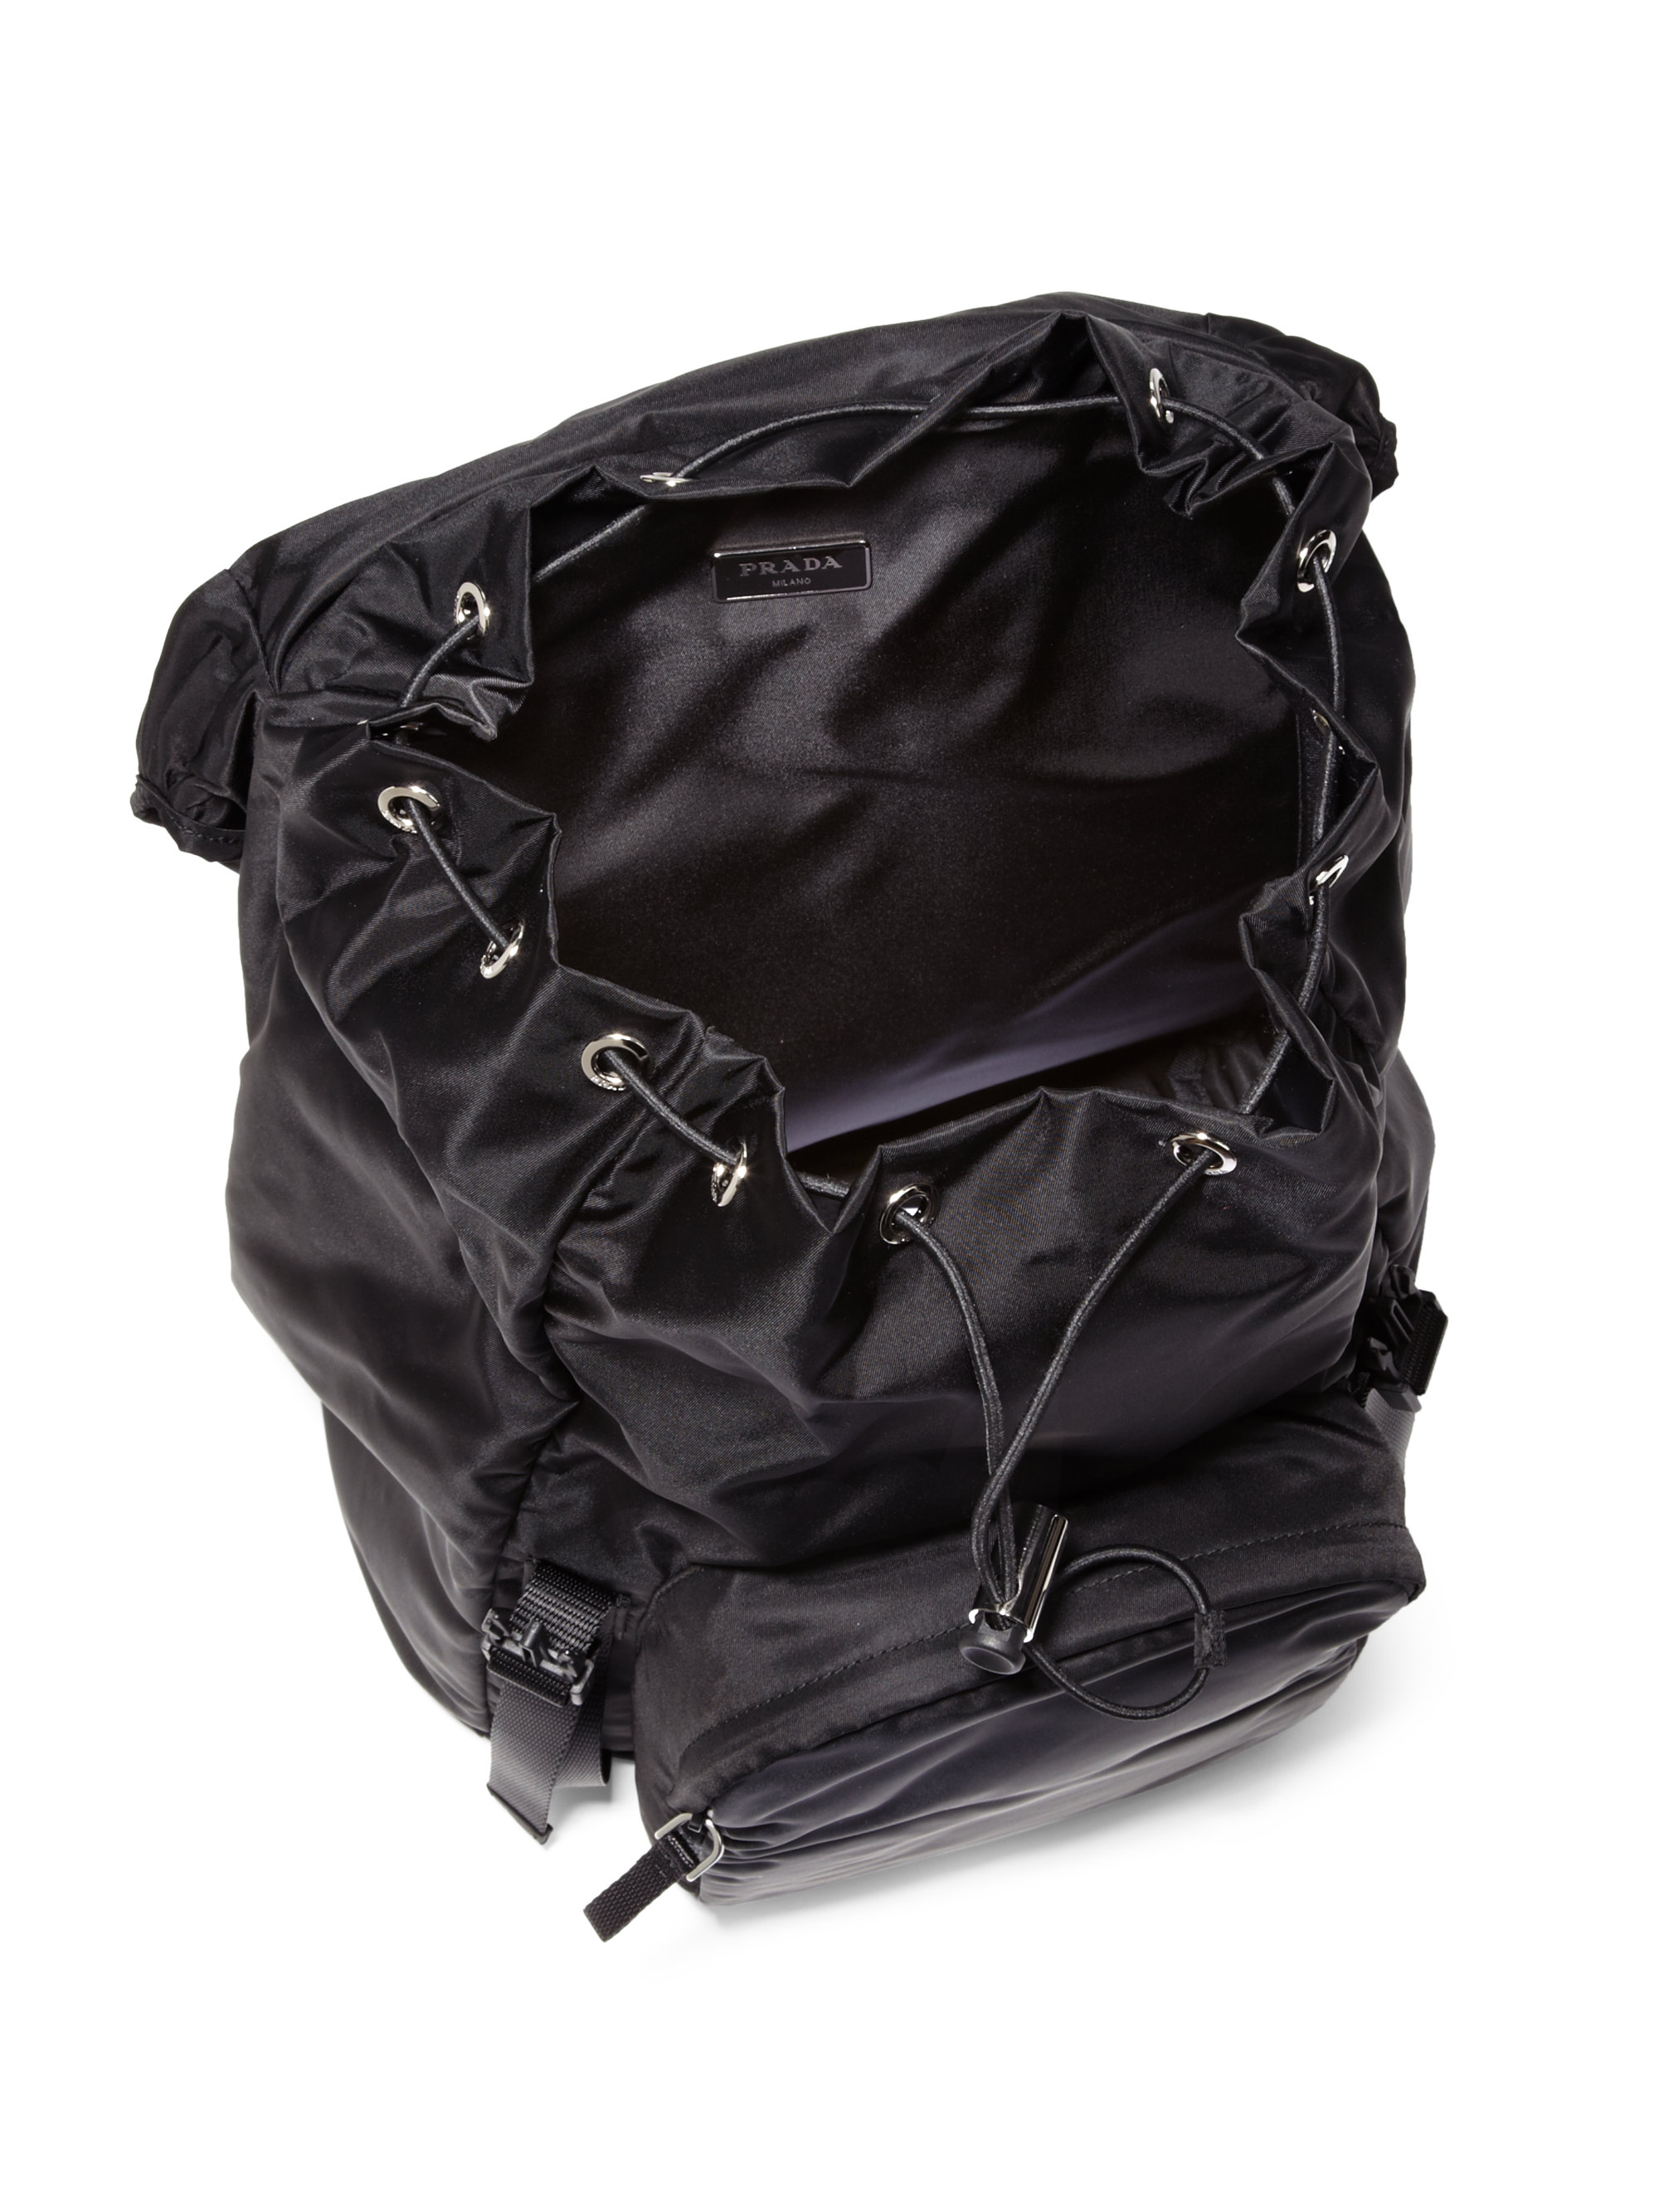 Prada Nylon Backpack in Black for Men | Lyst  